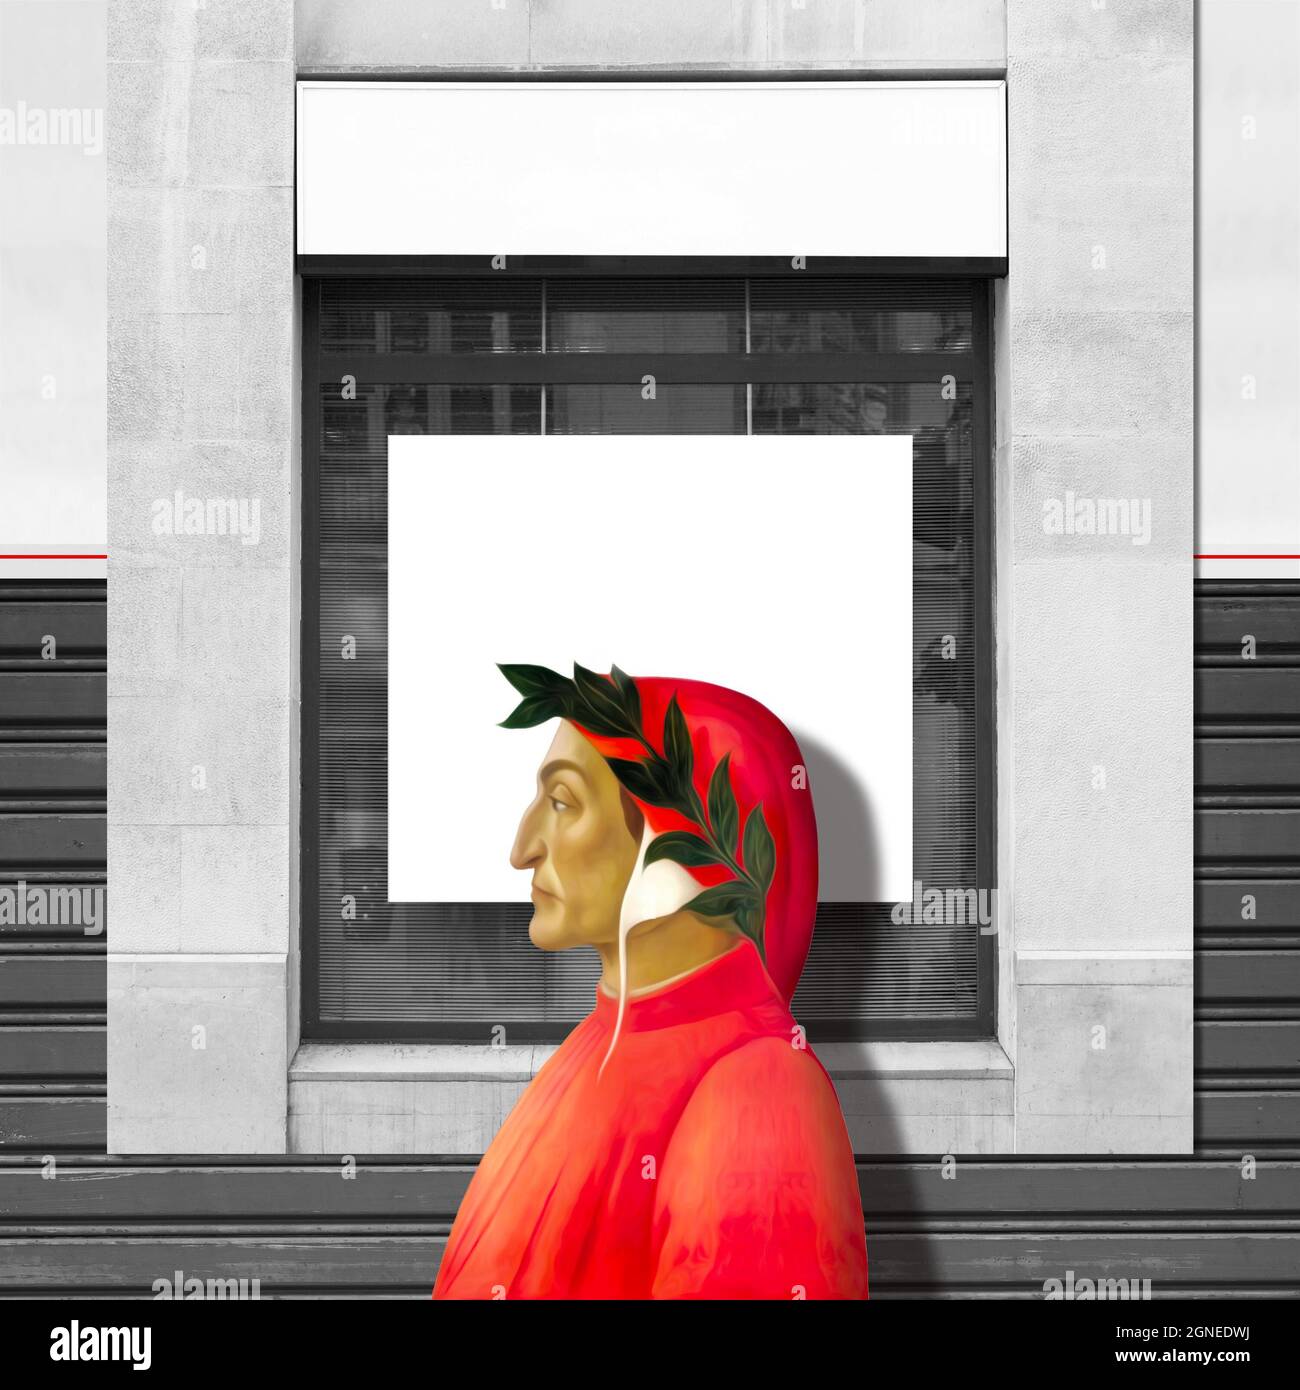 Dante Alighieri Profilillustration auf verwittertem Fenster und Wandhintergrund Stockfoto